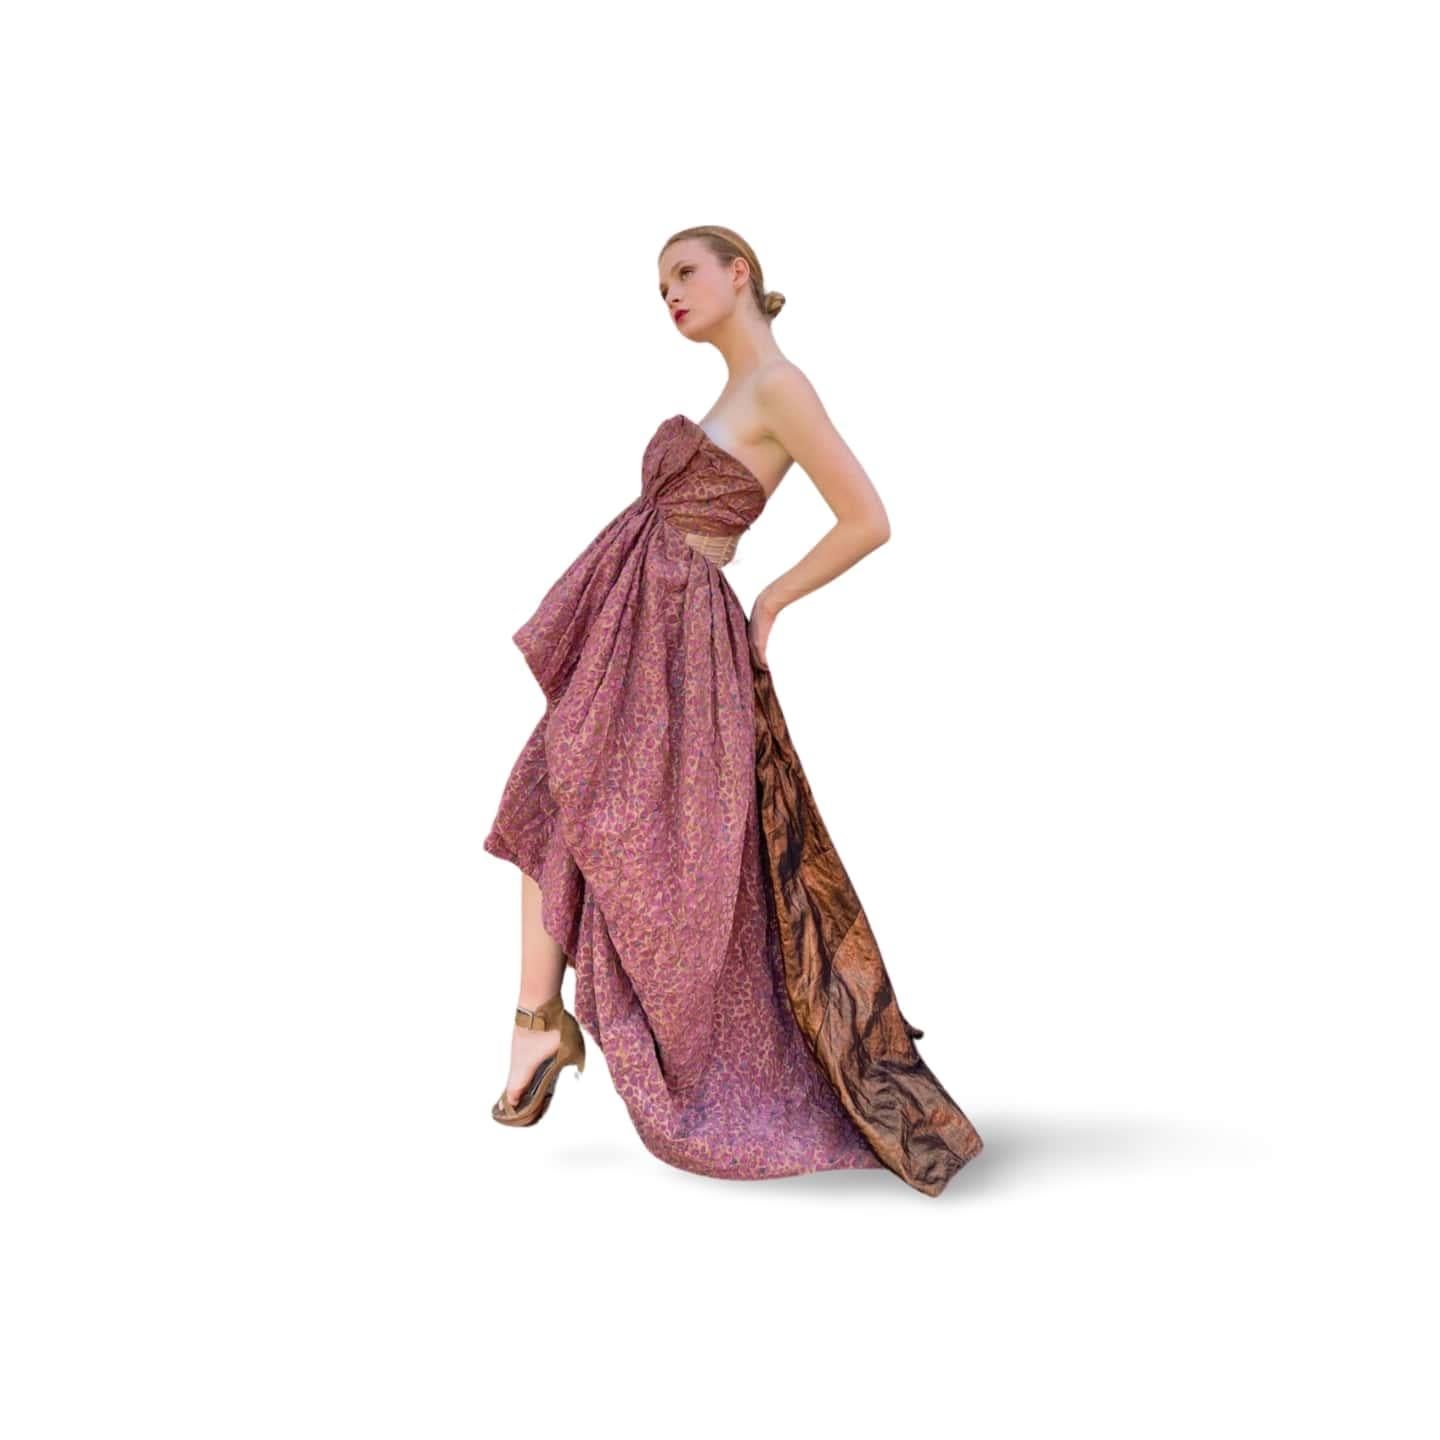 Dieses elegante Kleid, das Elle MacPherson beim Finale der Louis Vuitton Show 2010 auf dem Laufsteg trug, besteht aus verschiedenen Stoffen, die die Dramatik unterstreichen.
Sehen Sie aus wie ein Star in dieser Louis Vuitton by Marc Jacobs Herbst